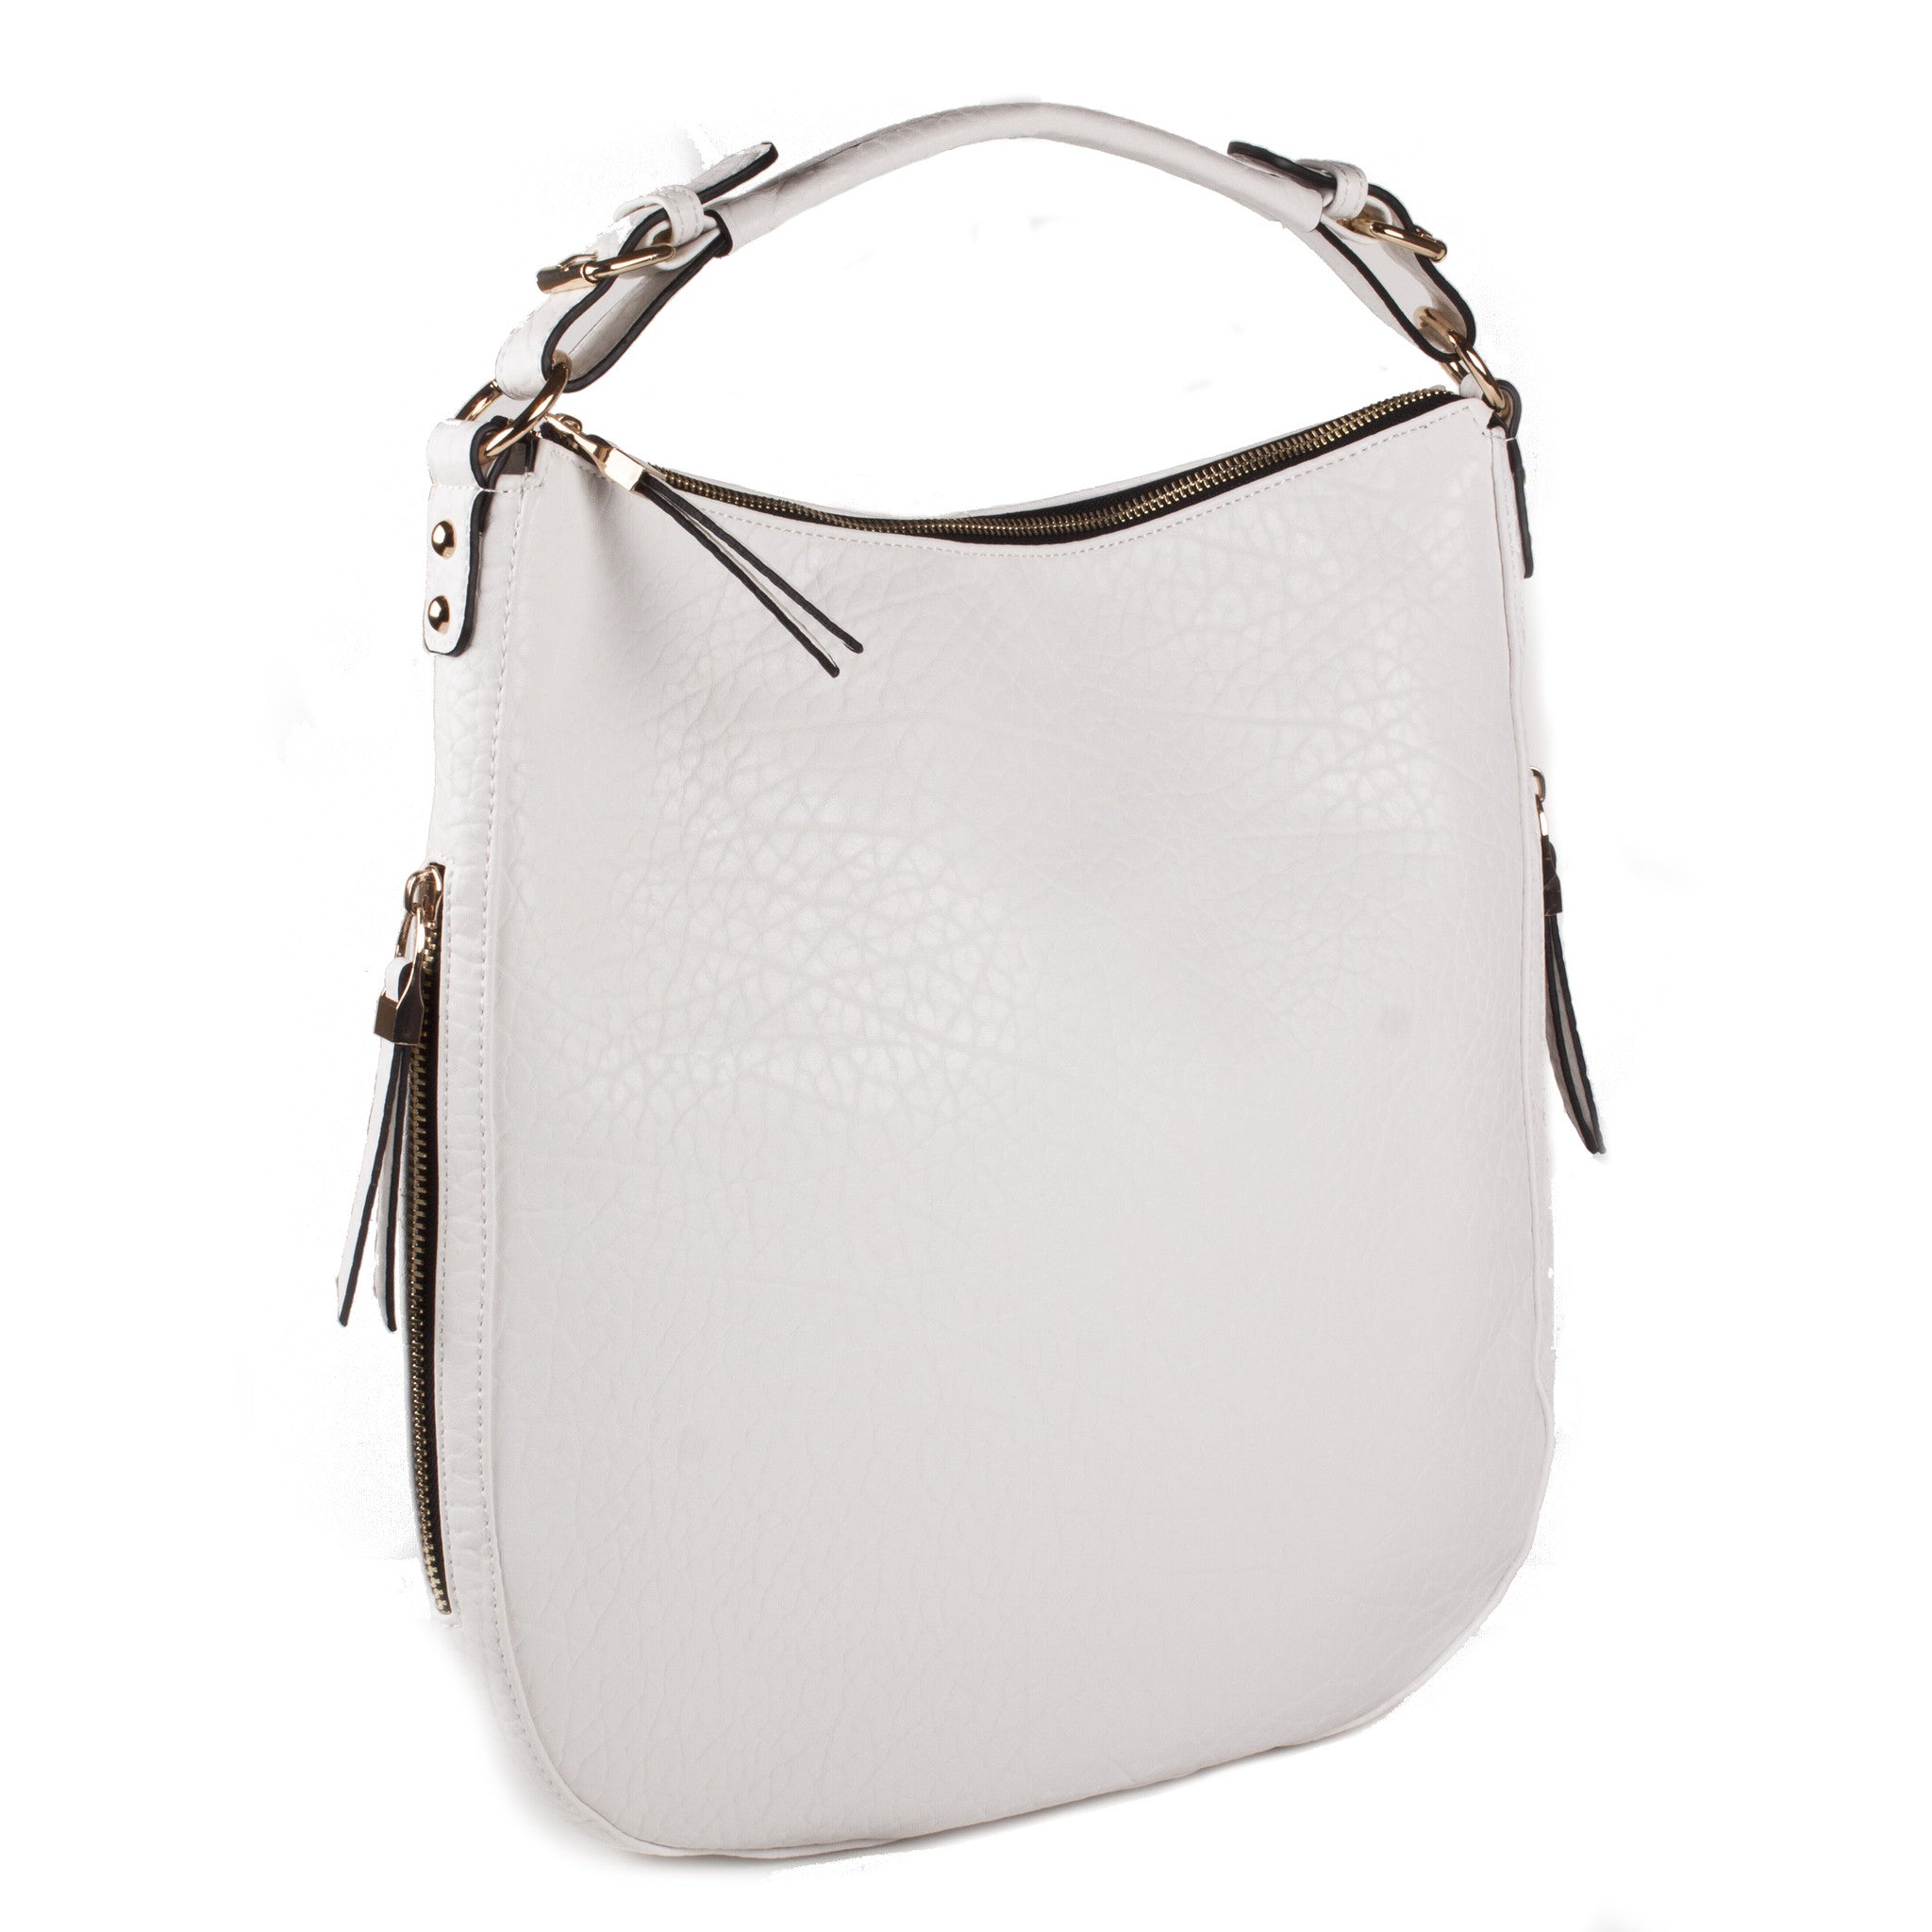 Moda Luxe 'Van' Vegan Leather Satchel Bag